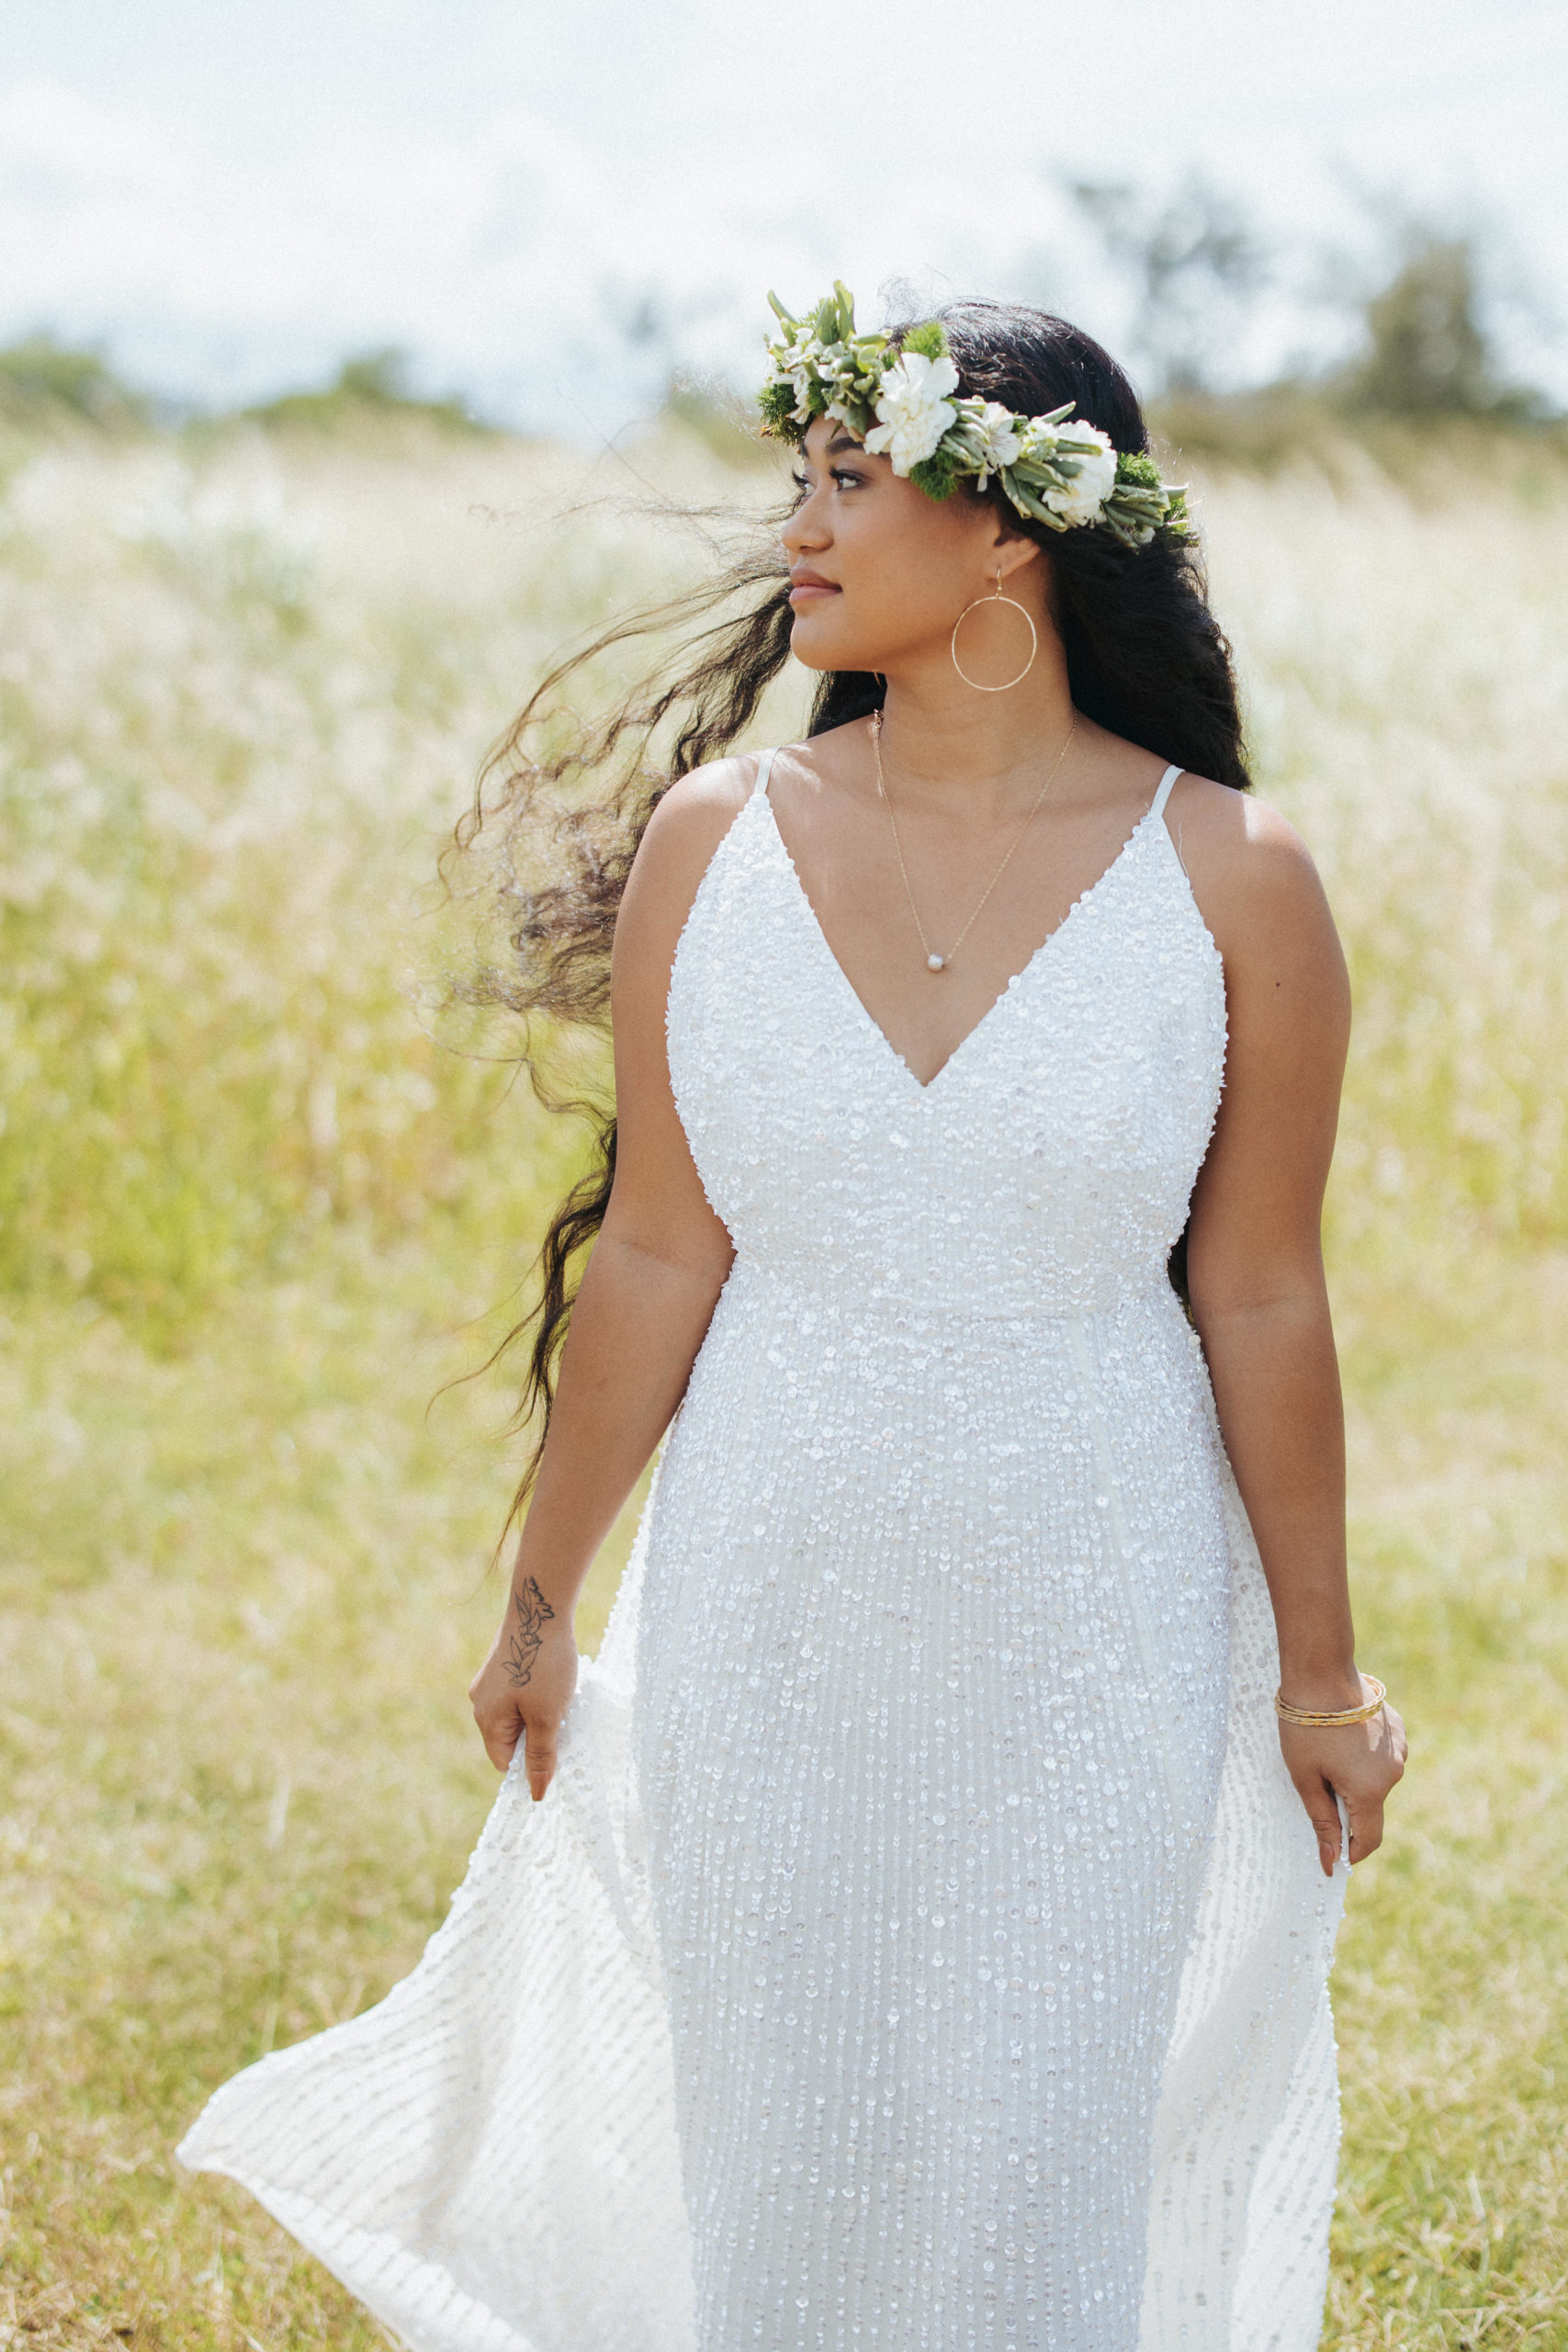 bride dancing in a field wearing a glitter wedding dress